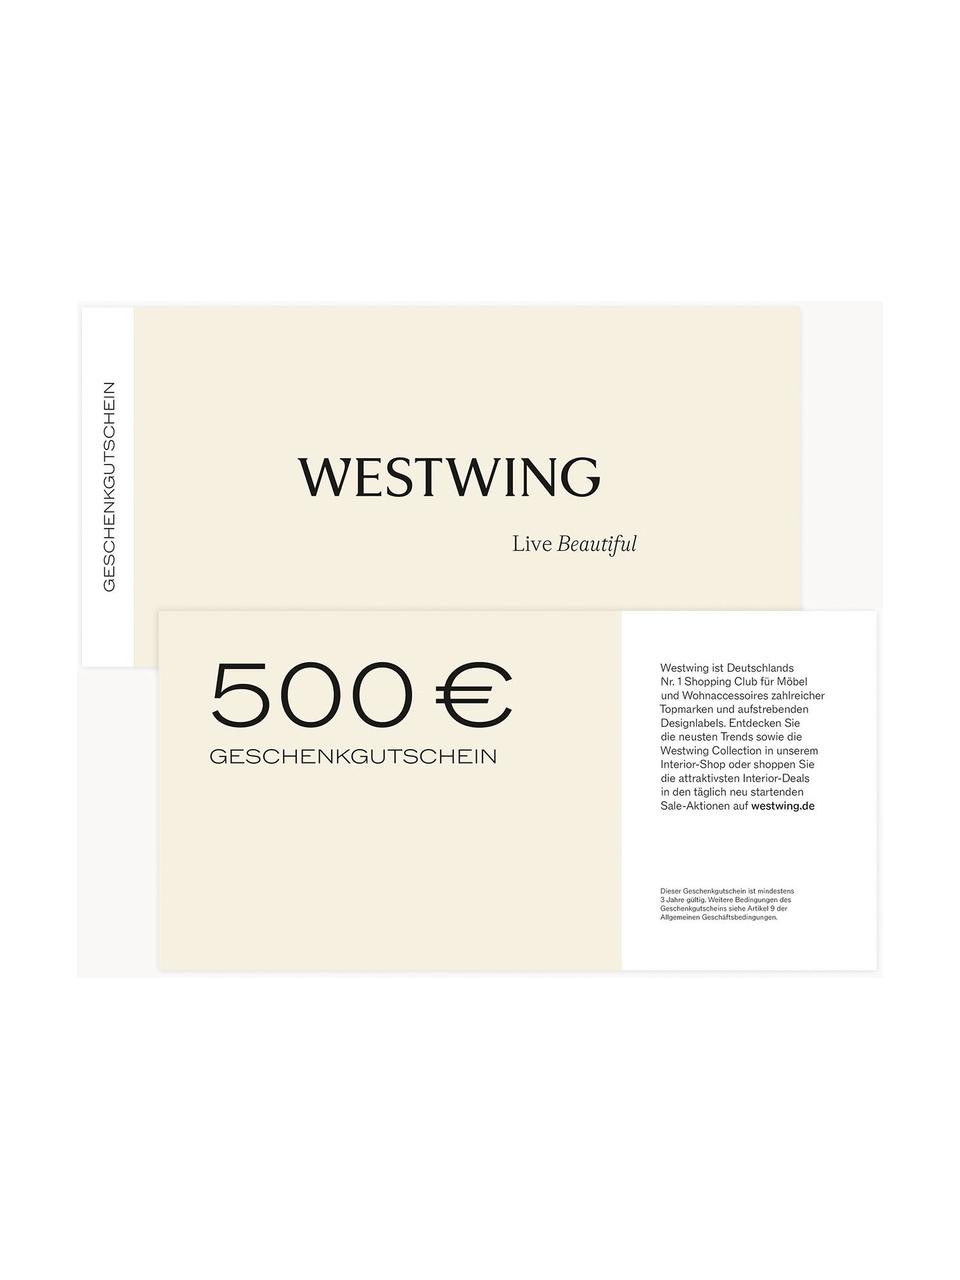 Gutscheinkarte, Gutschein auf edlem Papier, in hochwertigem Kuvert, Weiß, Lila, 500